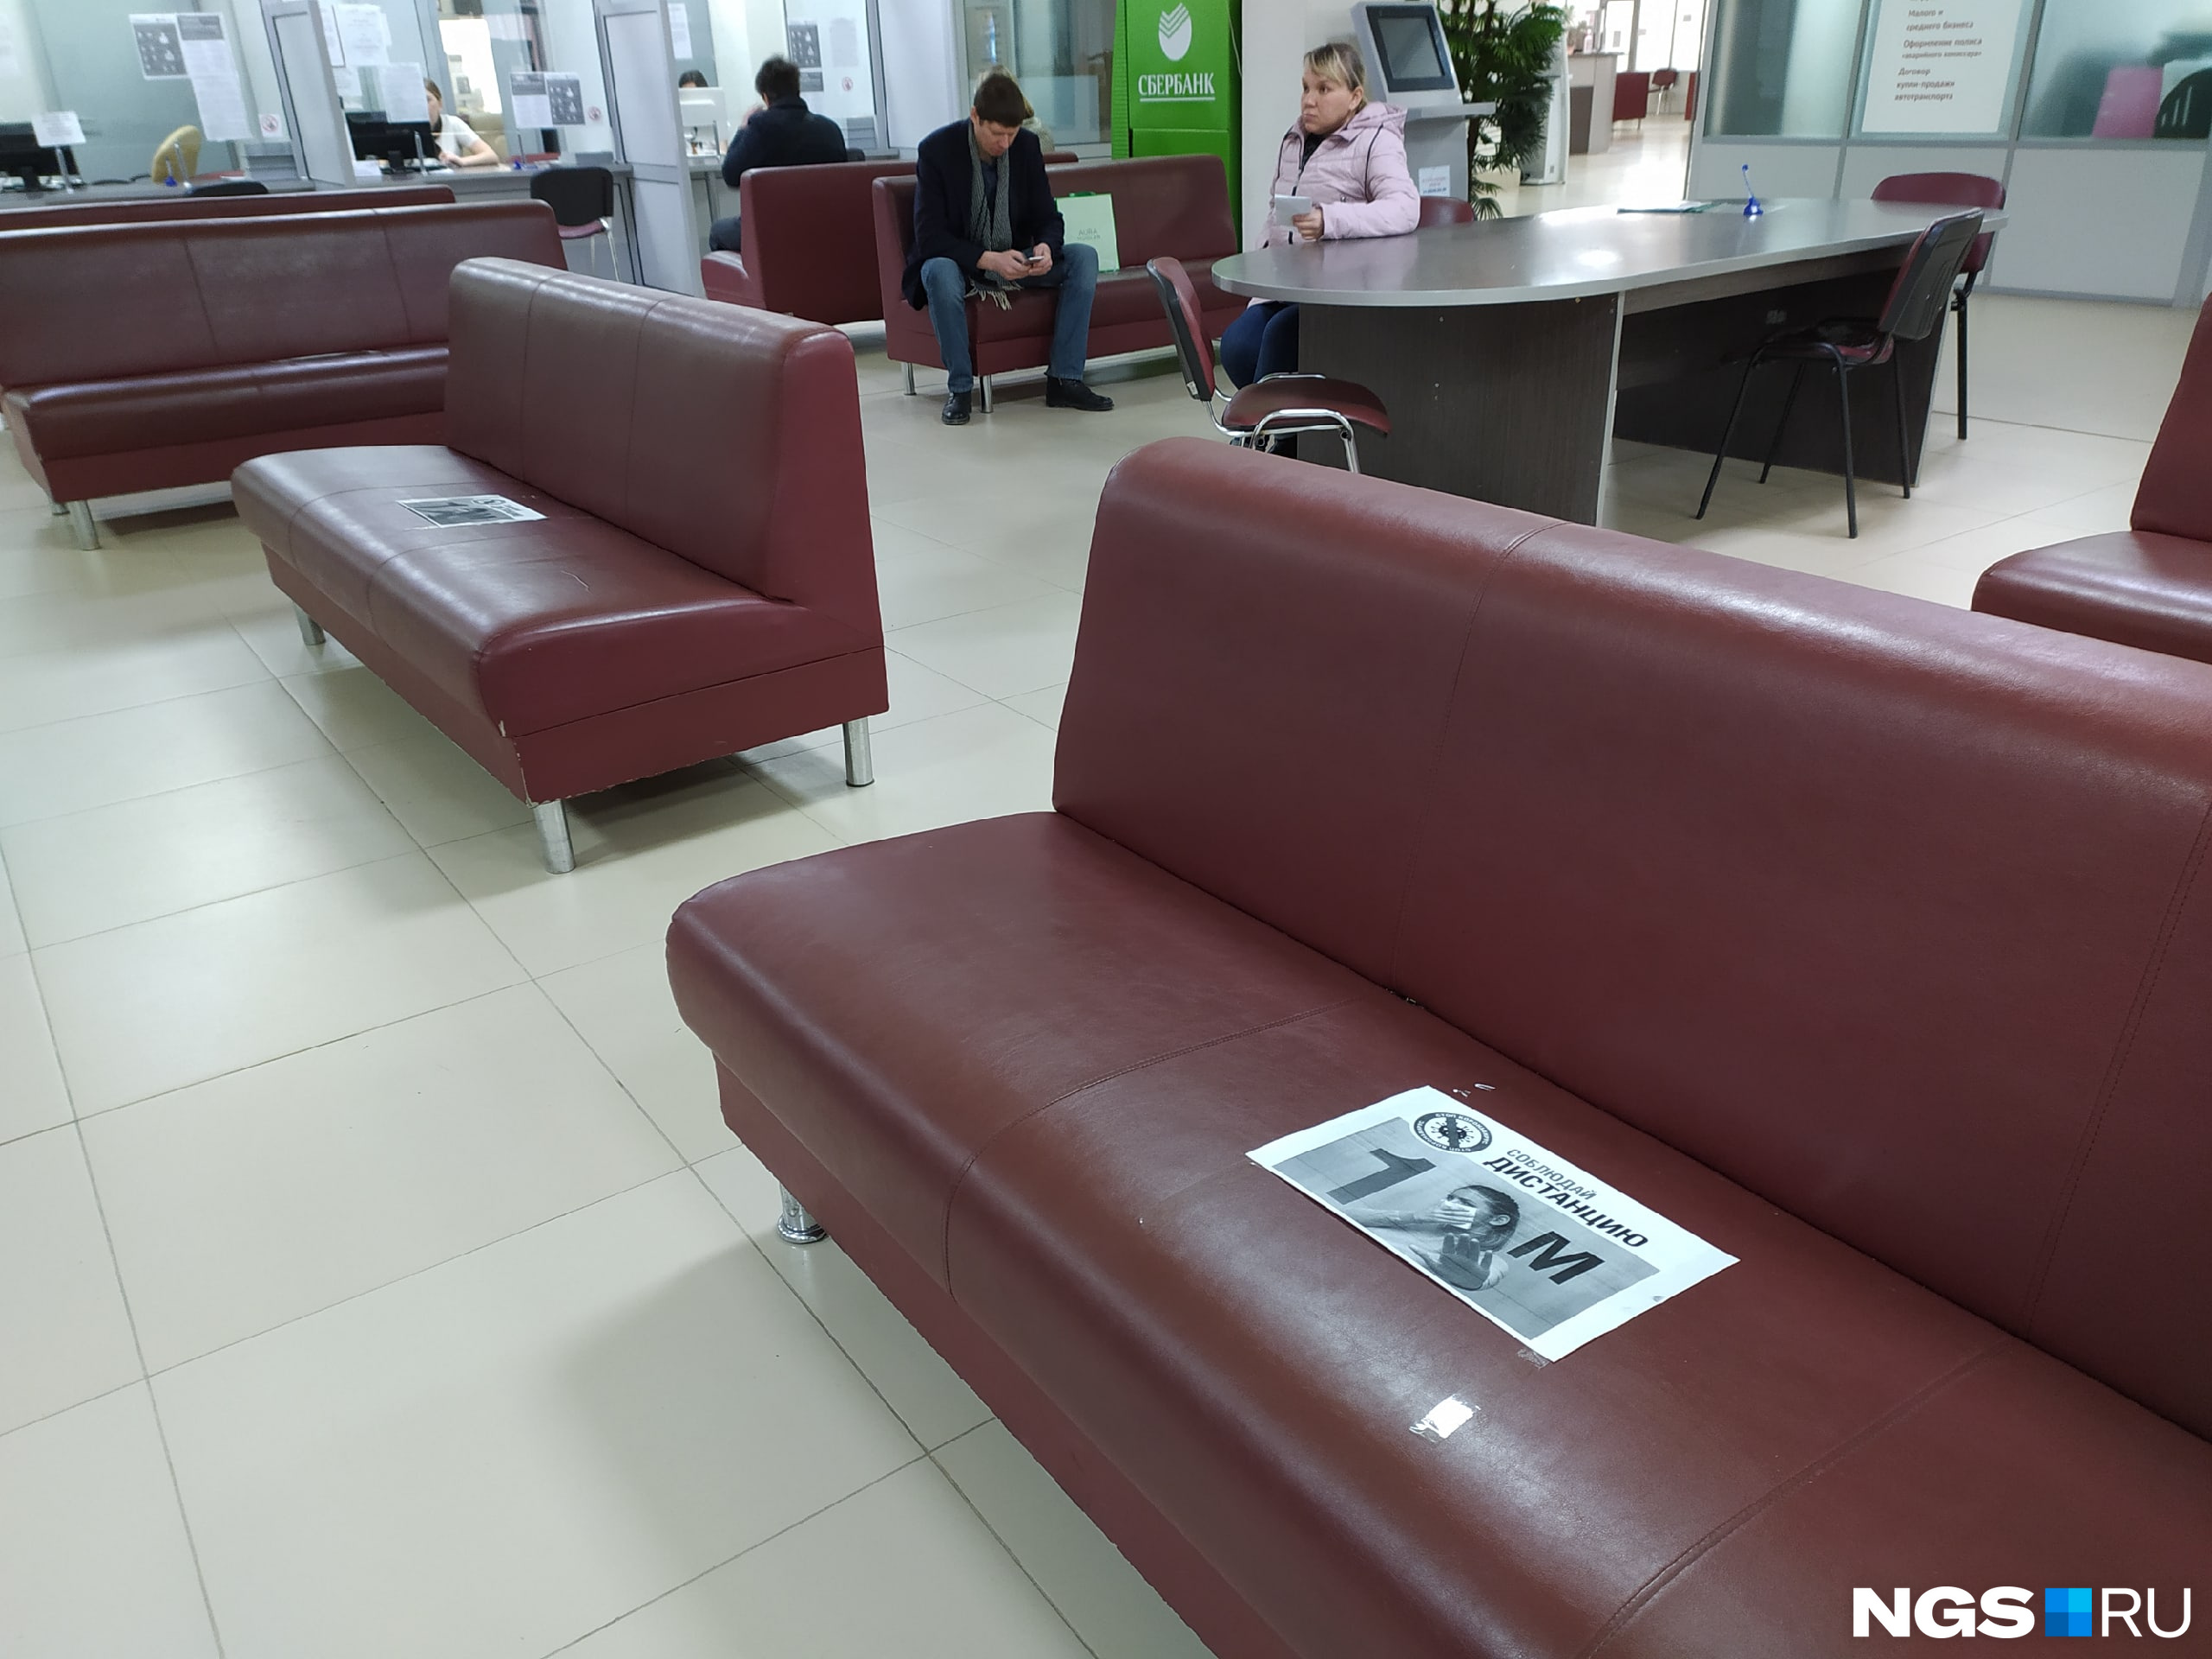 Во вновь открытых МФЦ появились надписи на диванах о необходимости соблюдать дистанцию